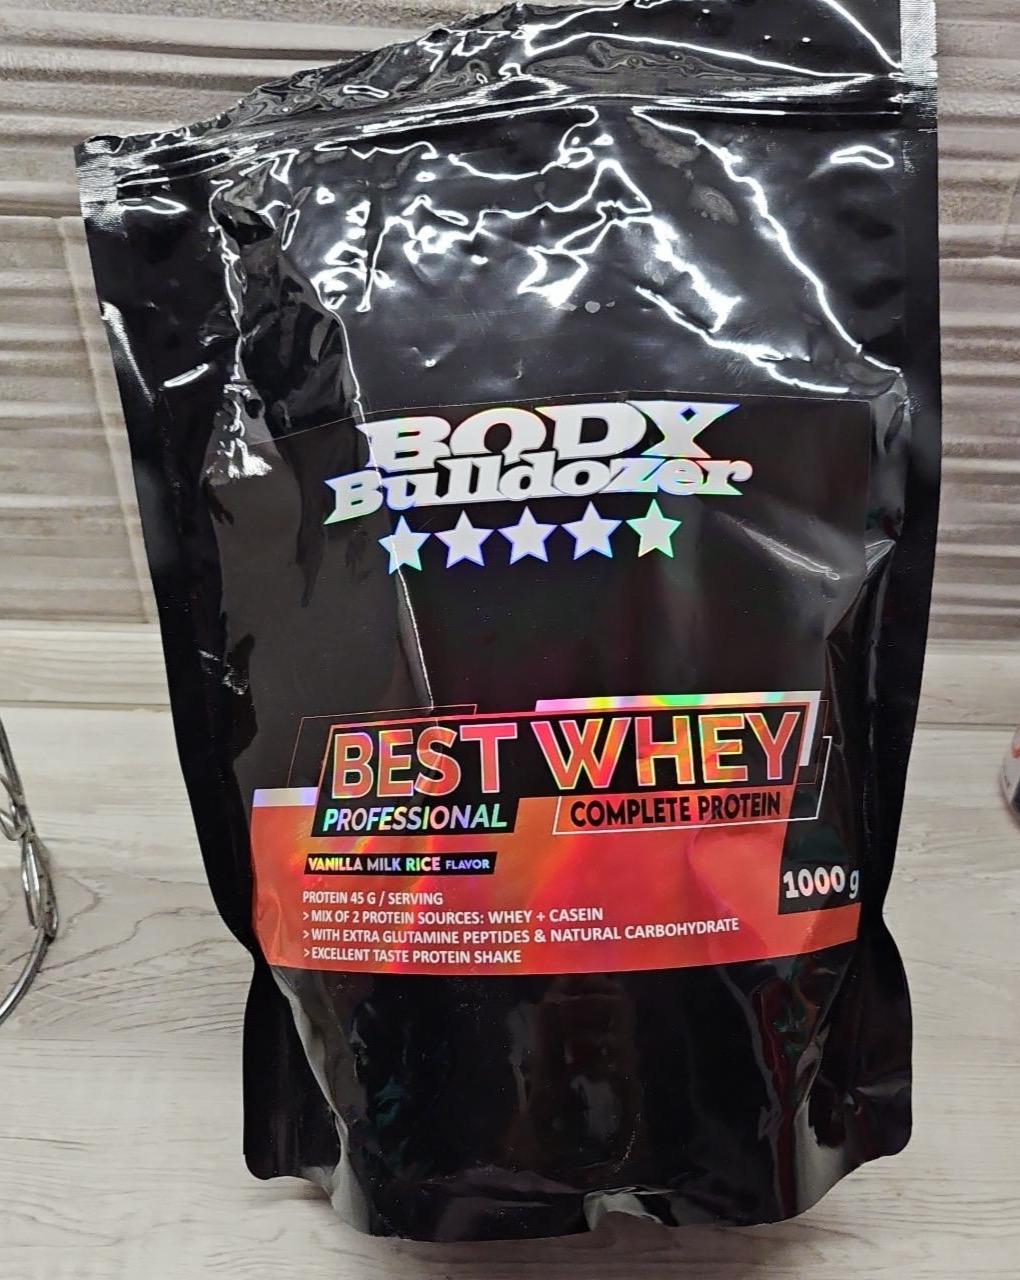 Képek - Best whey Vanilla milk rice Body Bulldozer